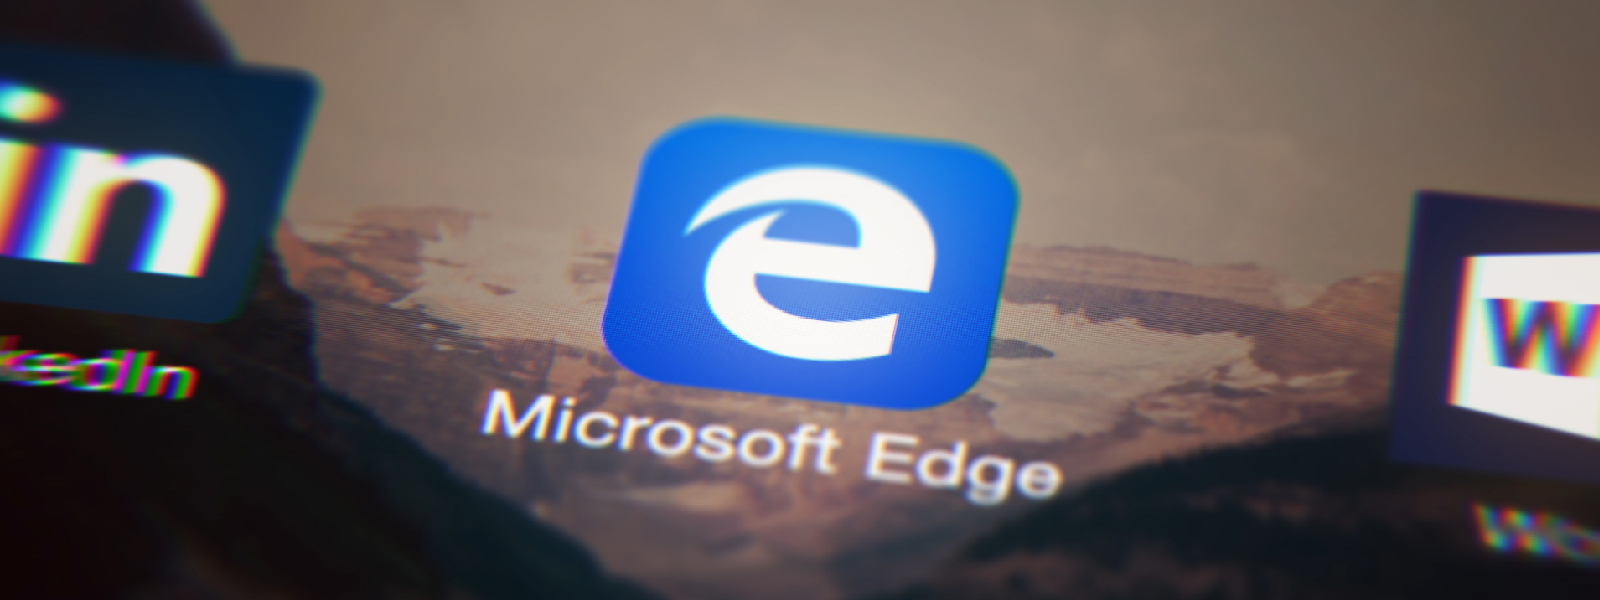 Traduzir páginas instantaneamente na nova atualização do Microsoft Edge para iOS